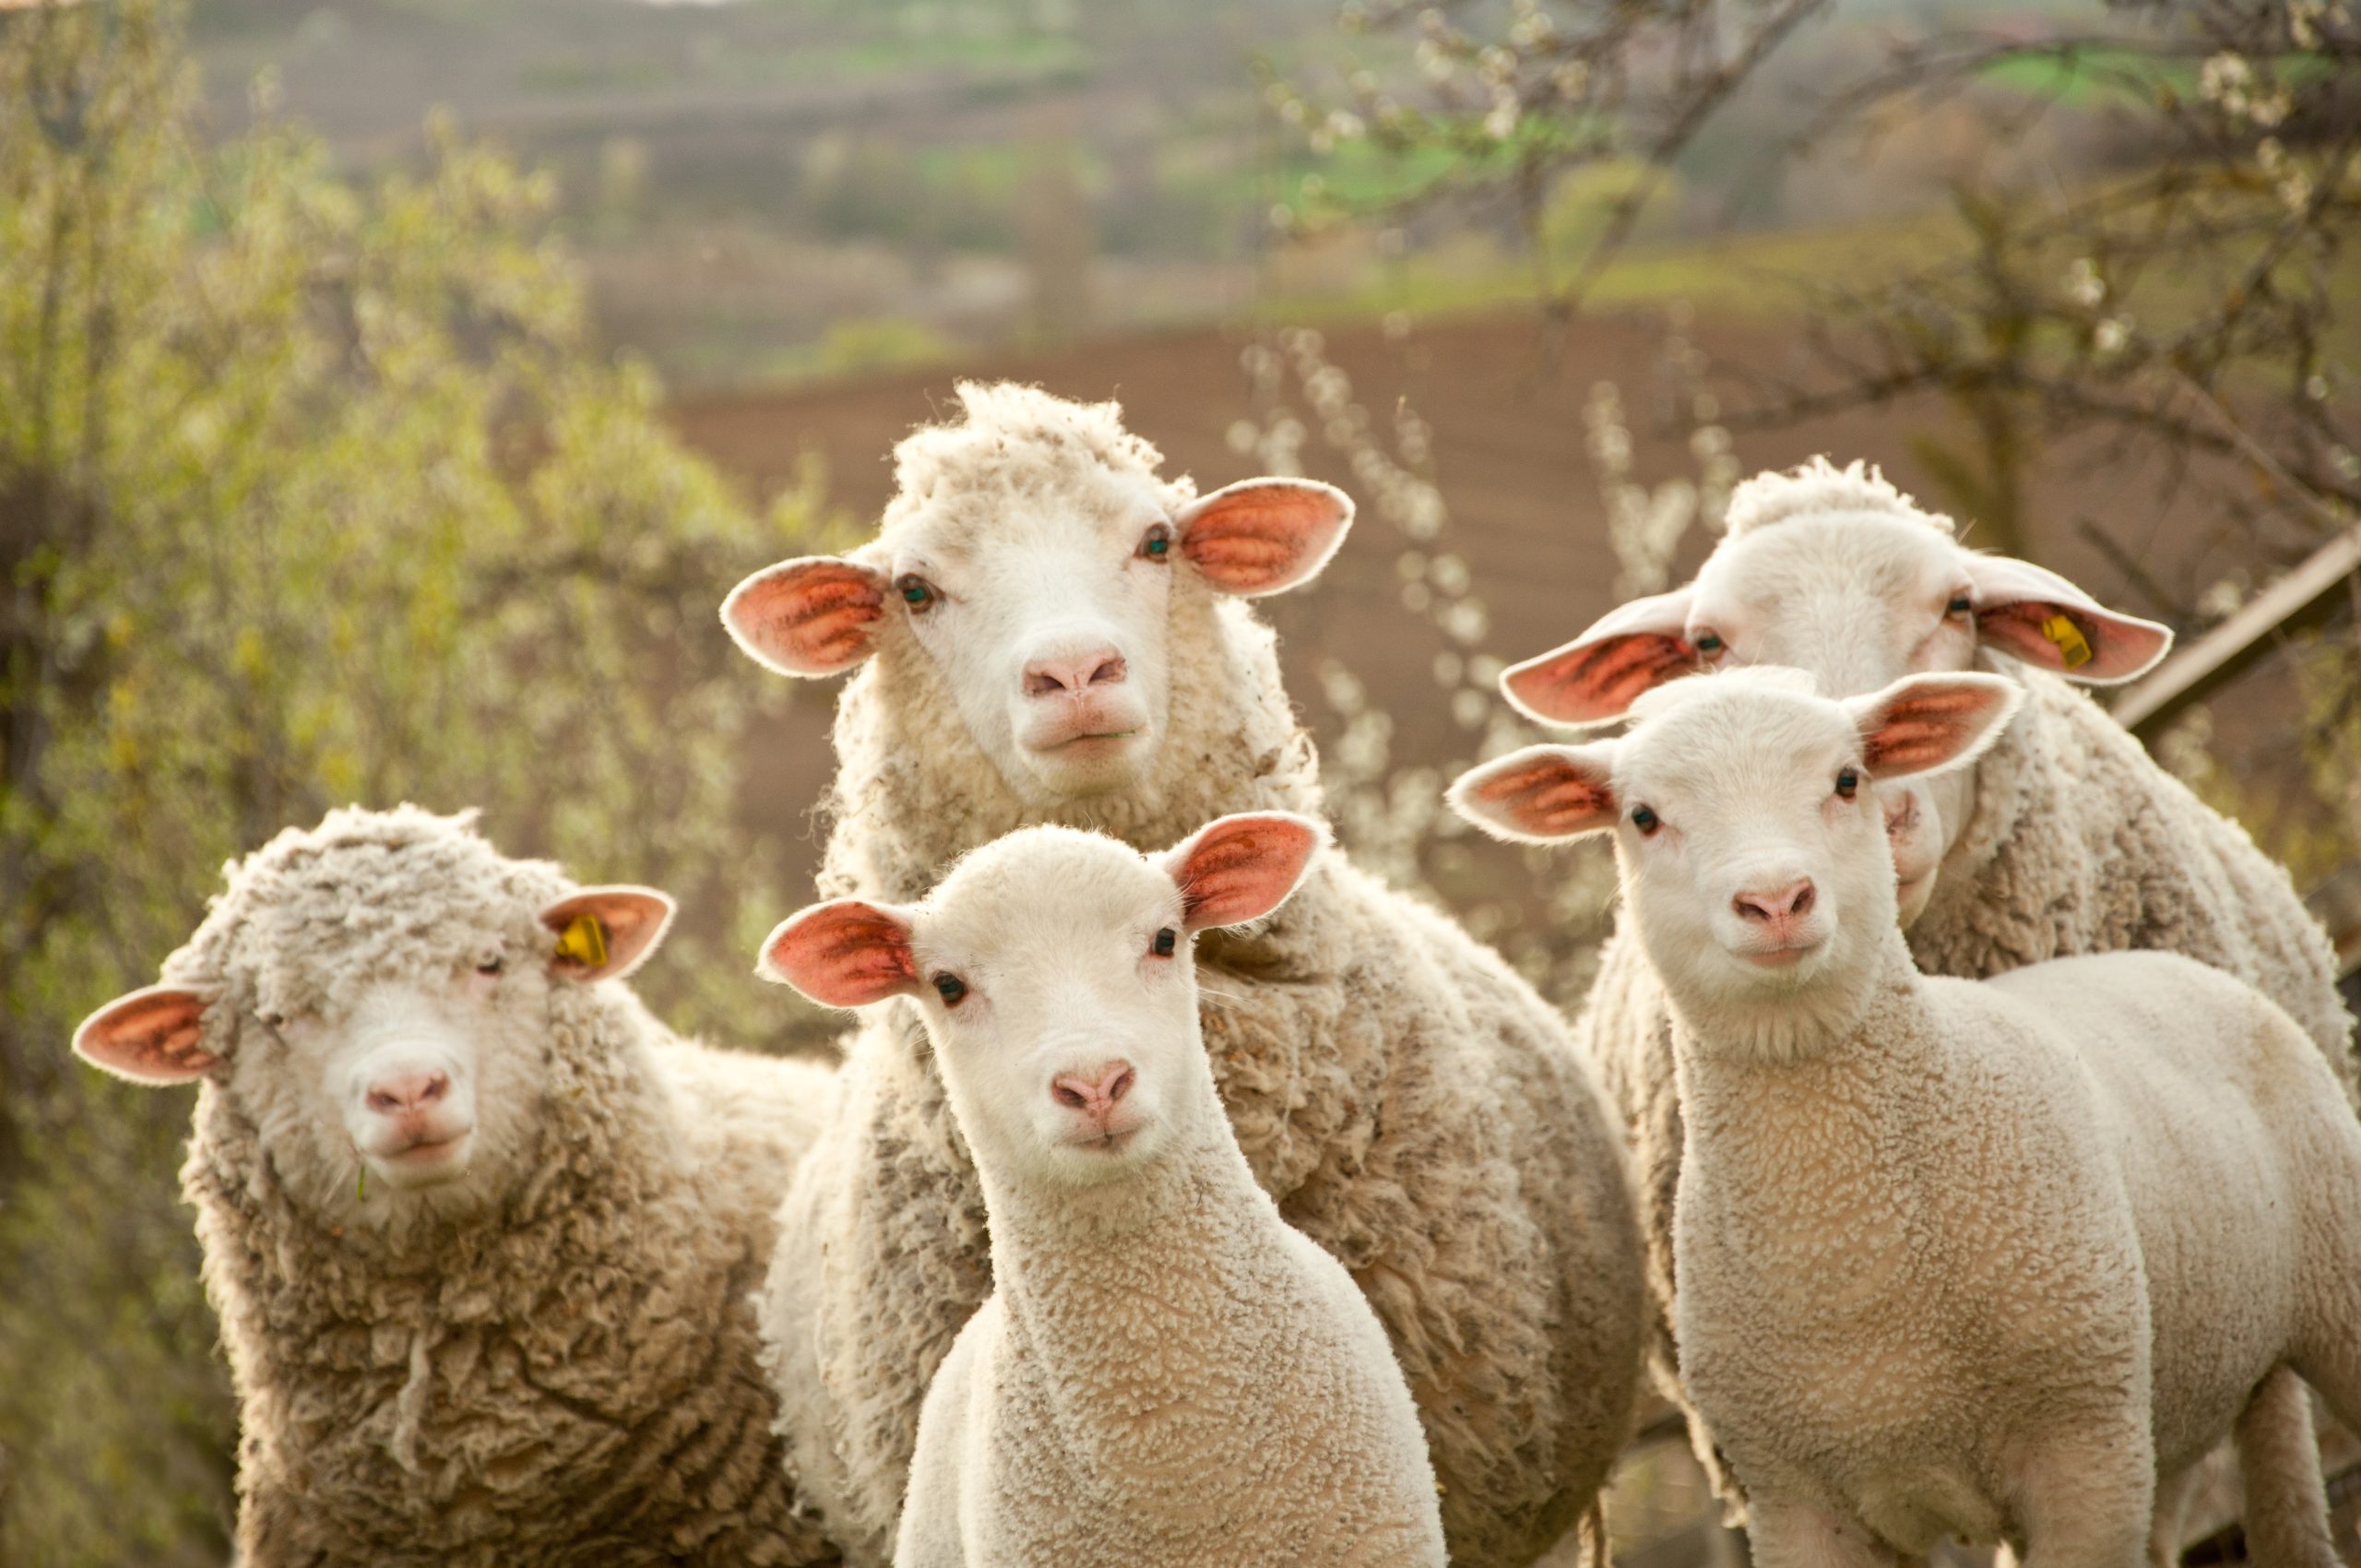 https://depositphotos.com/17165943/stock-photo-sheep-and-lambs.html